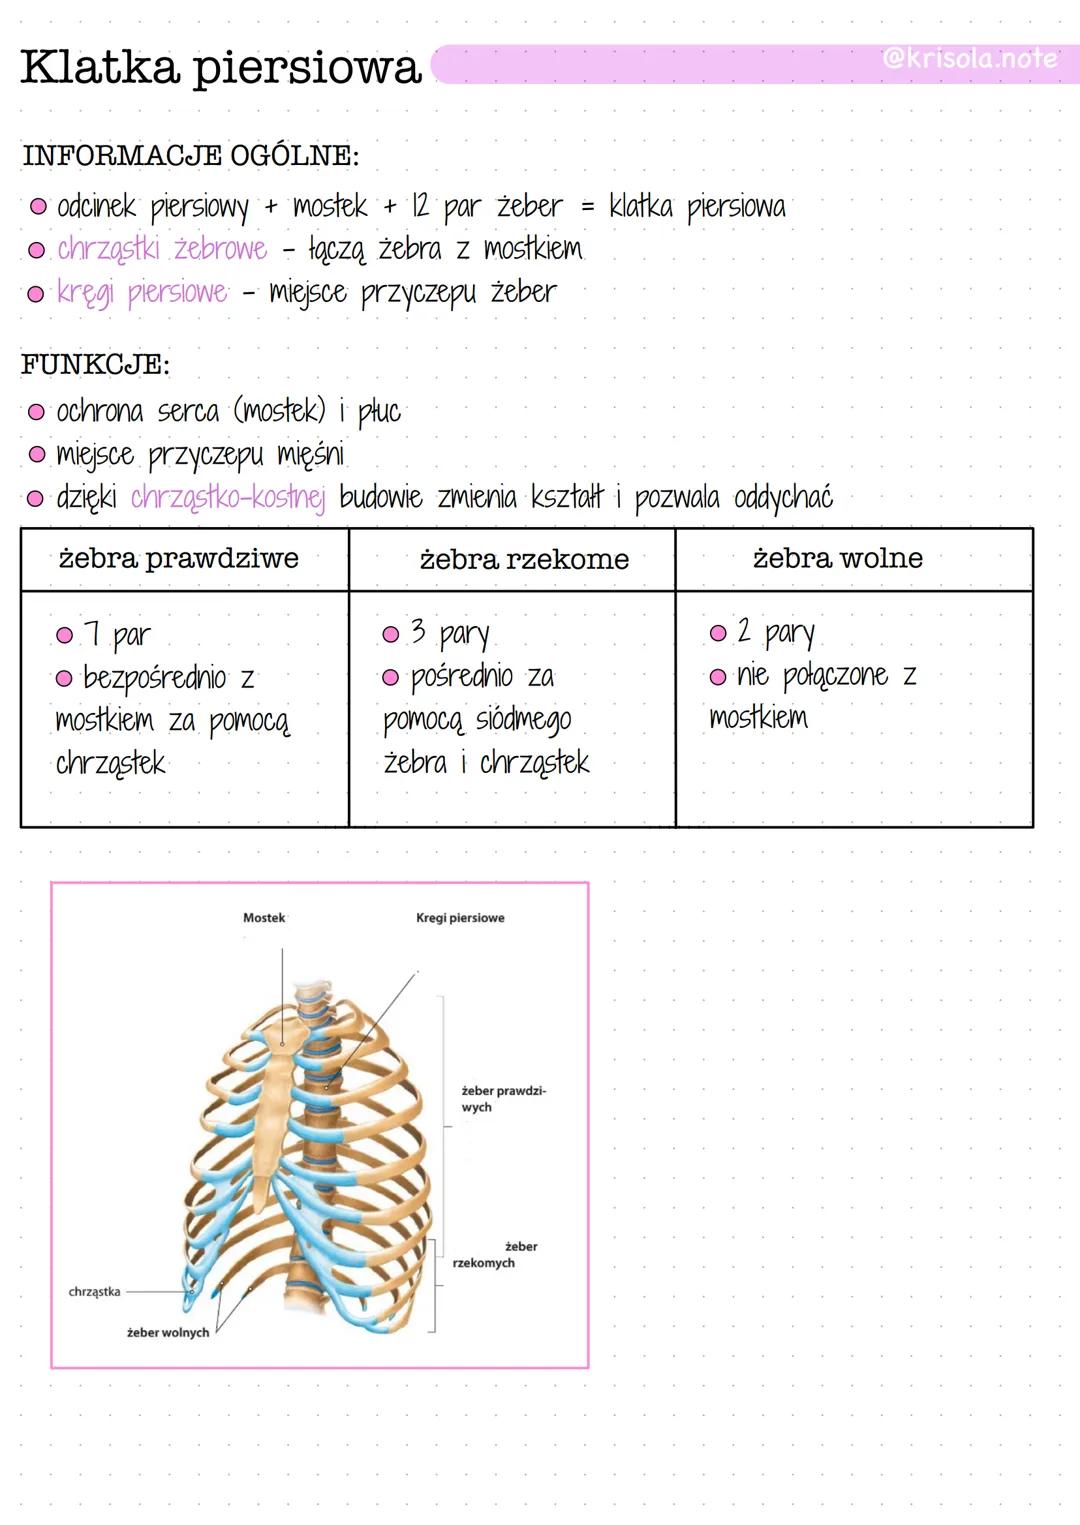 Klatka piersiowa
INFORMACJE OGÓLNE:
O odcinek piersiowy + mostek + 12 par żeber = klatka piersiowa
O chrząstki żebrowe - łączą żebra z mostk